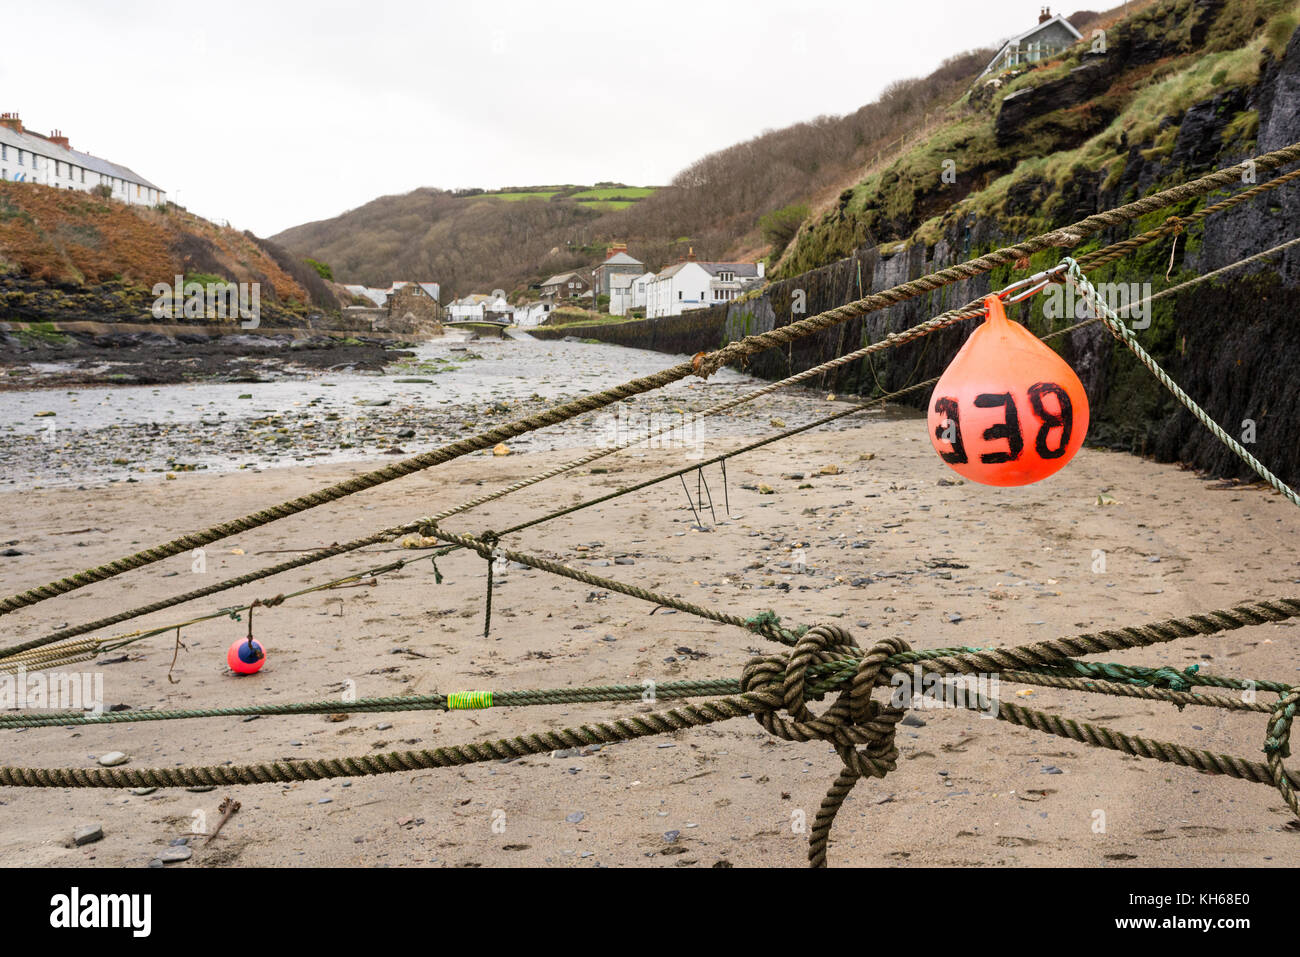 Cordes en bateau à marée basse dans l'anse étroite de Boscastle, Cornwall, UK nord-est Banque D'Images